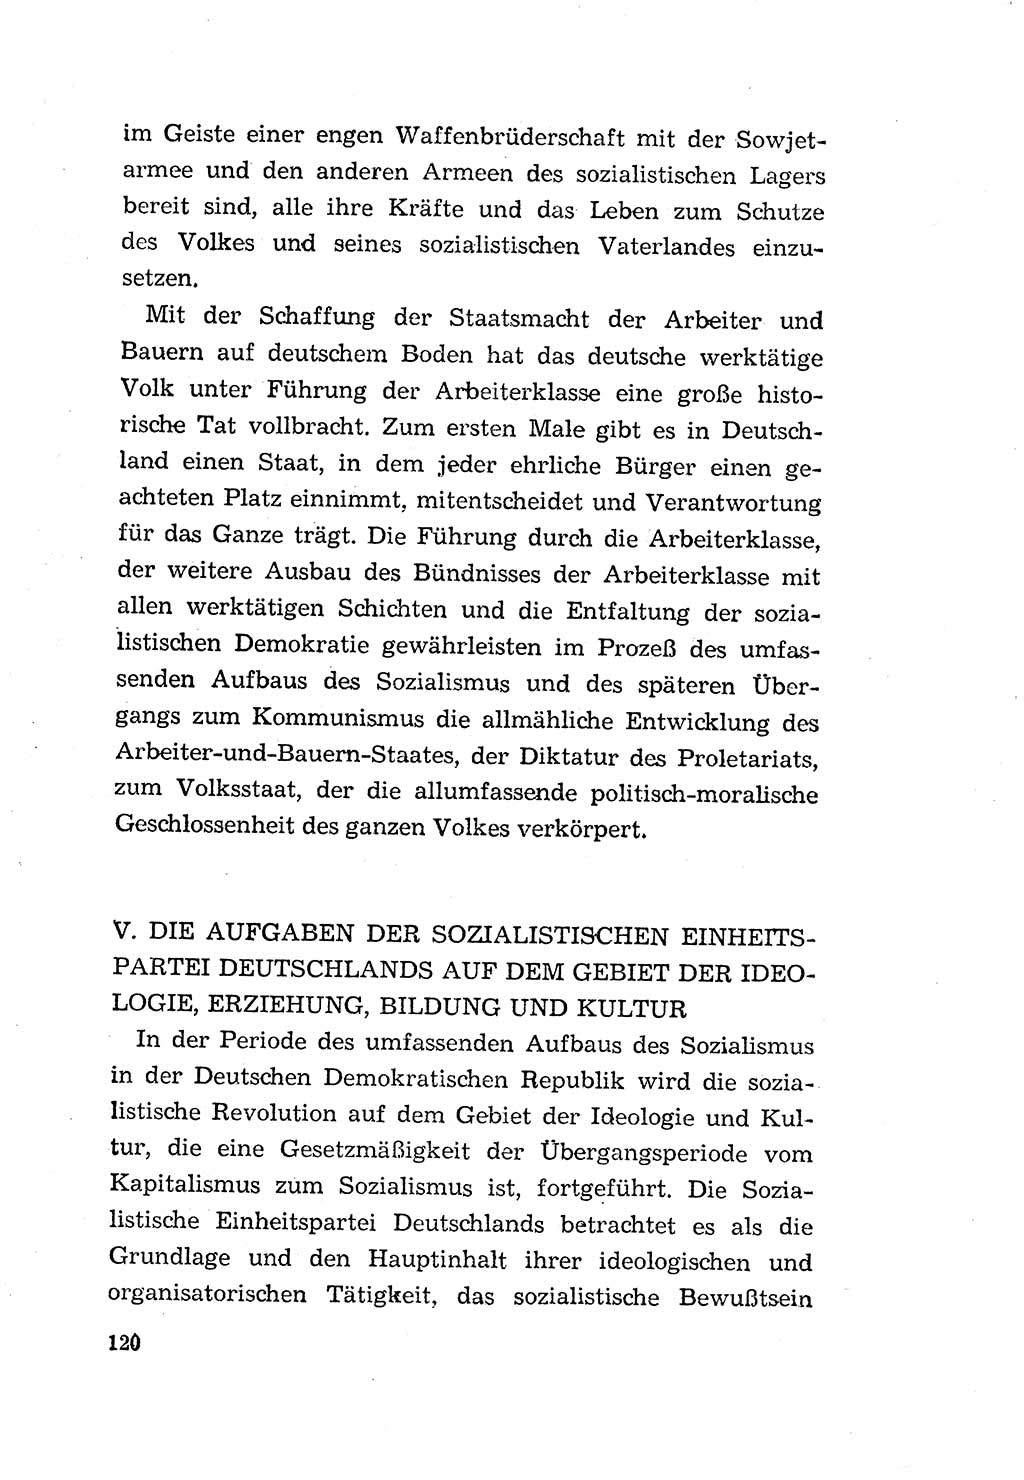 Programm der Sozialistischen Einheitspartei Deutschlands (SED) [Deutsche Demokratische Republik (DDR)] 1963, Seite 120 (Progr. SED DDR 1963, S. 120)